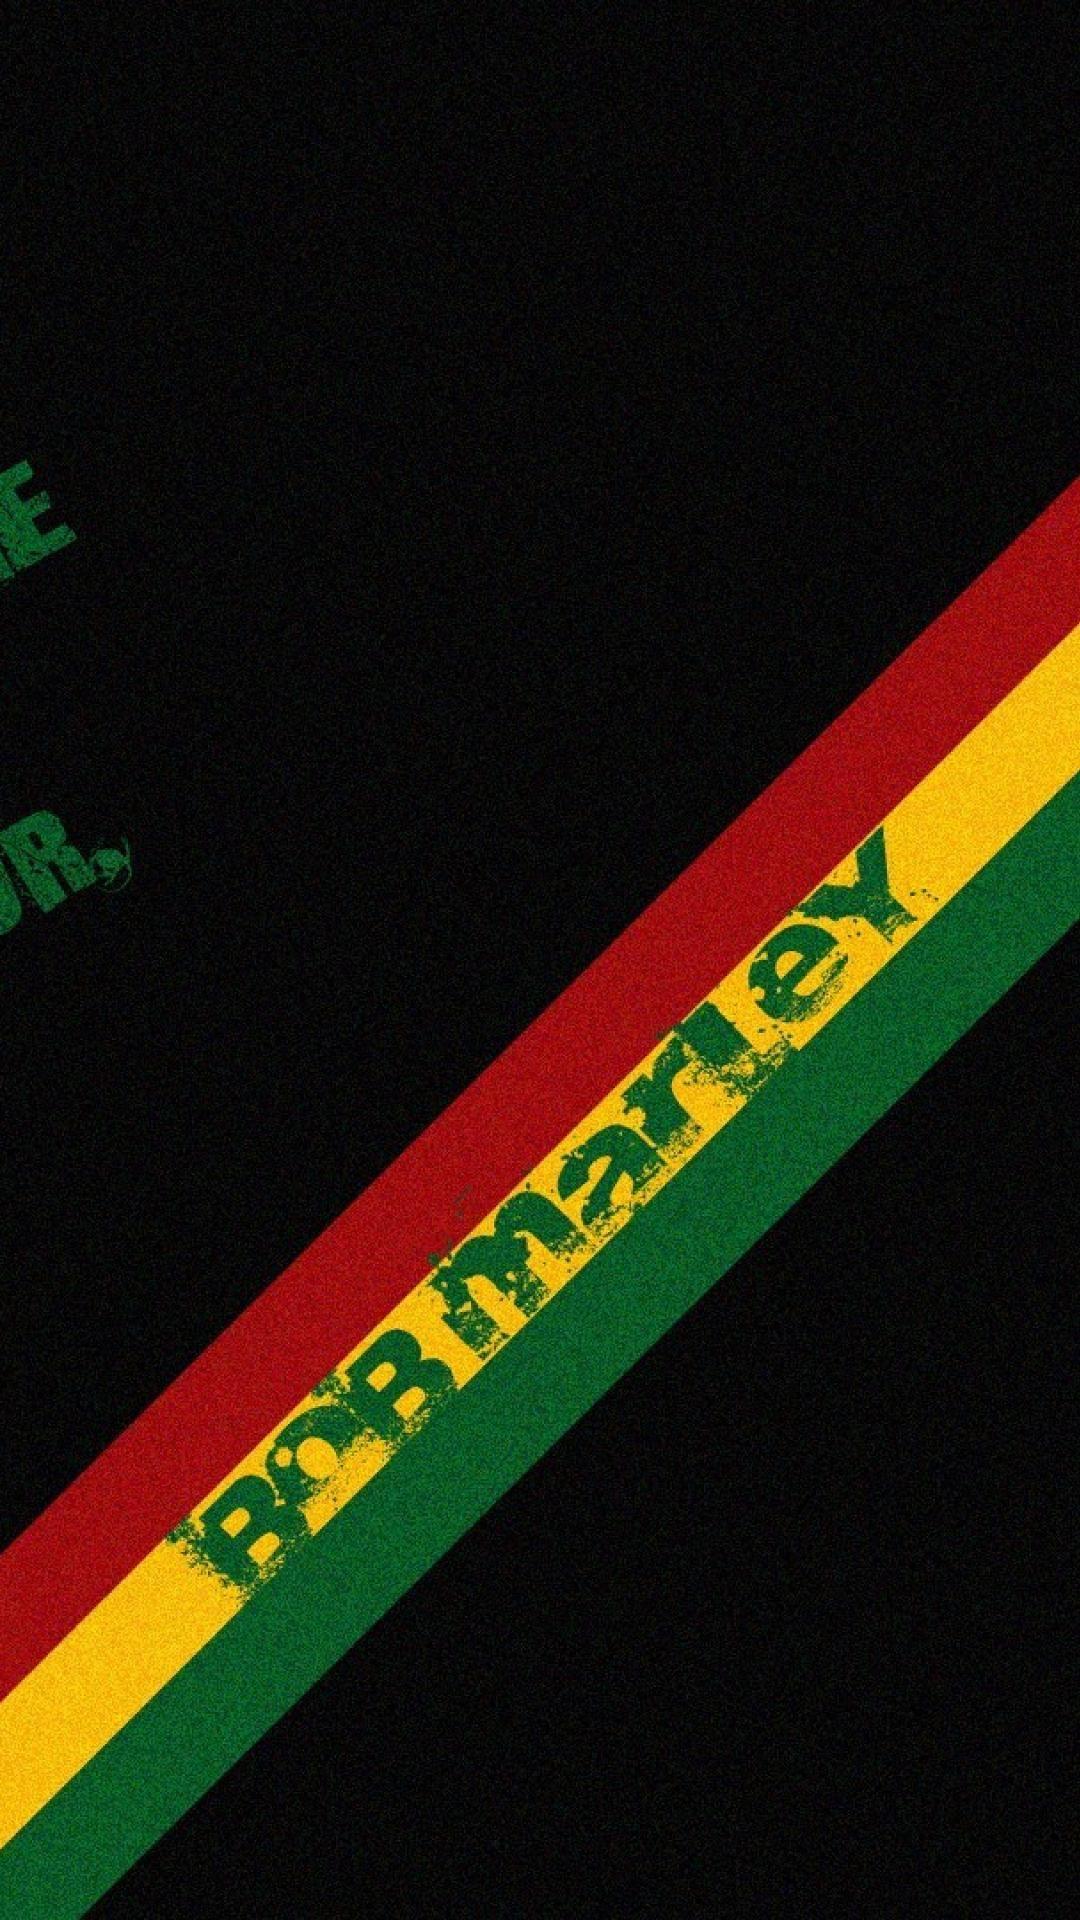 Bob marley rastafari movement music quotes rasta wallpaper